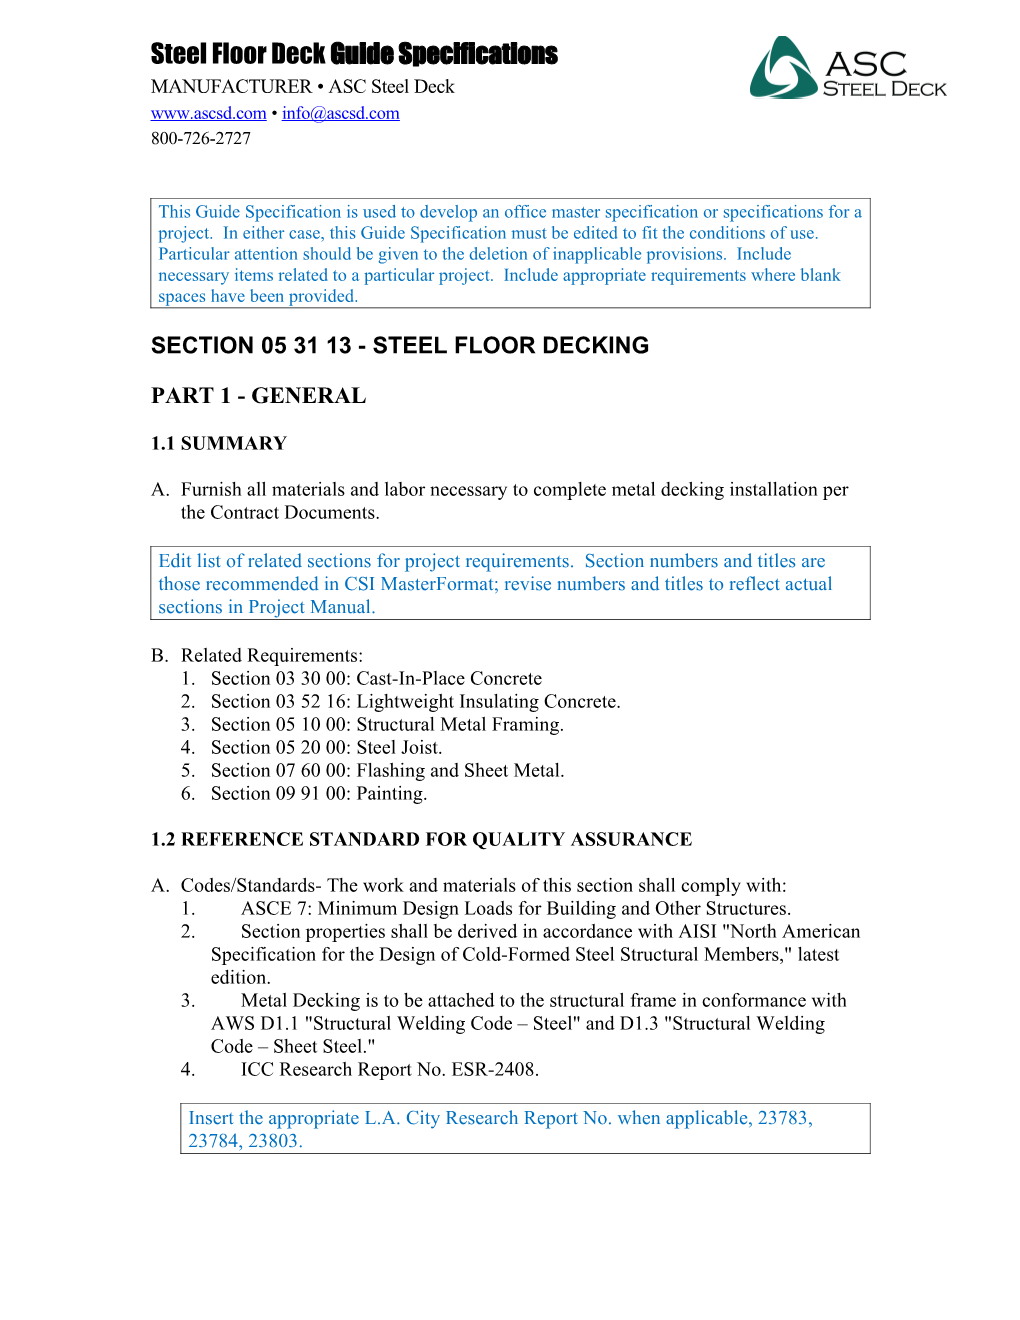 Section 053113 - Steel Floor Decking